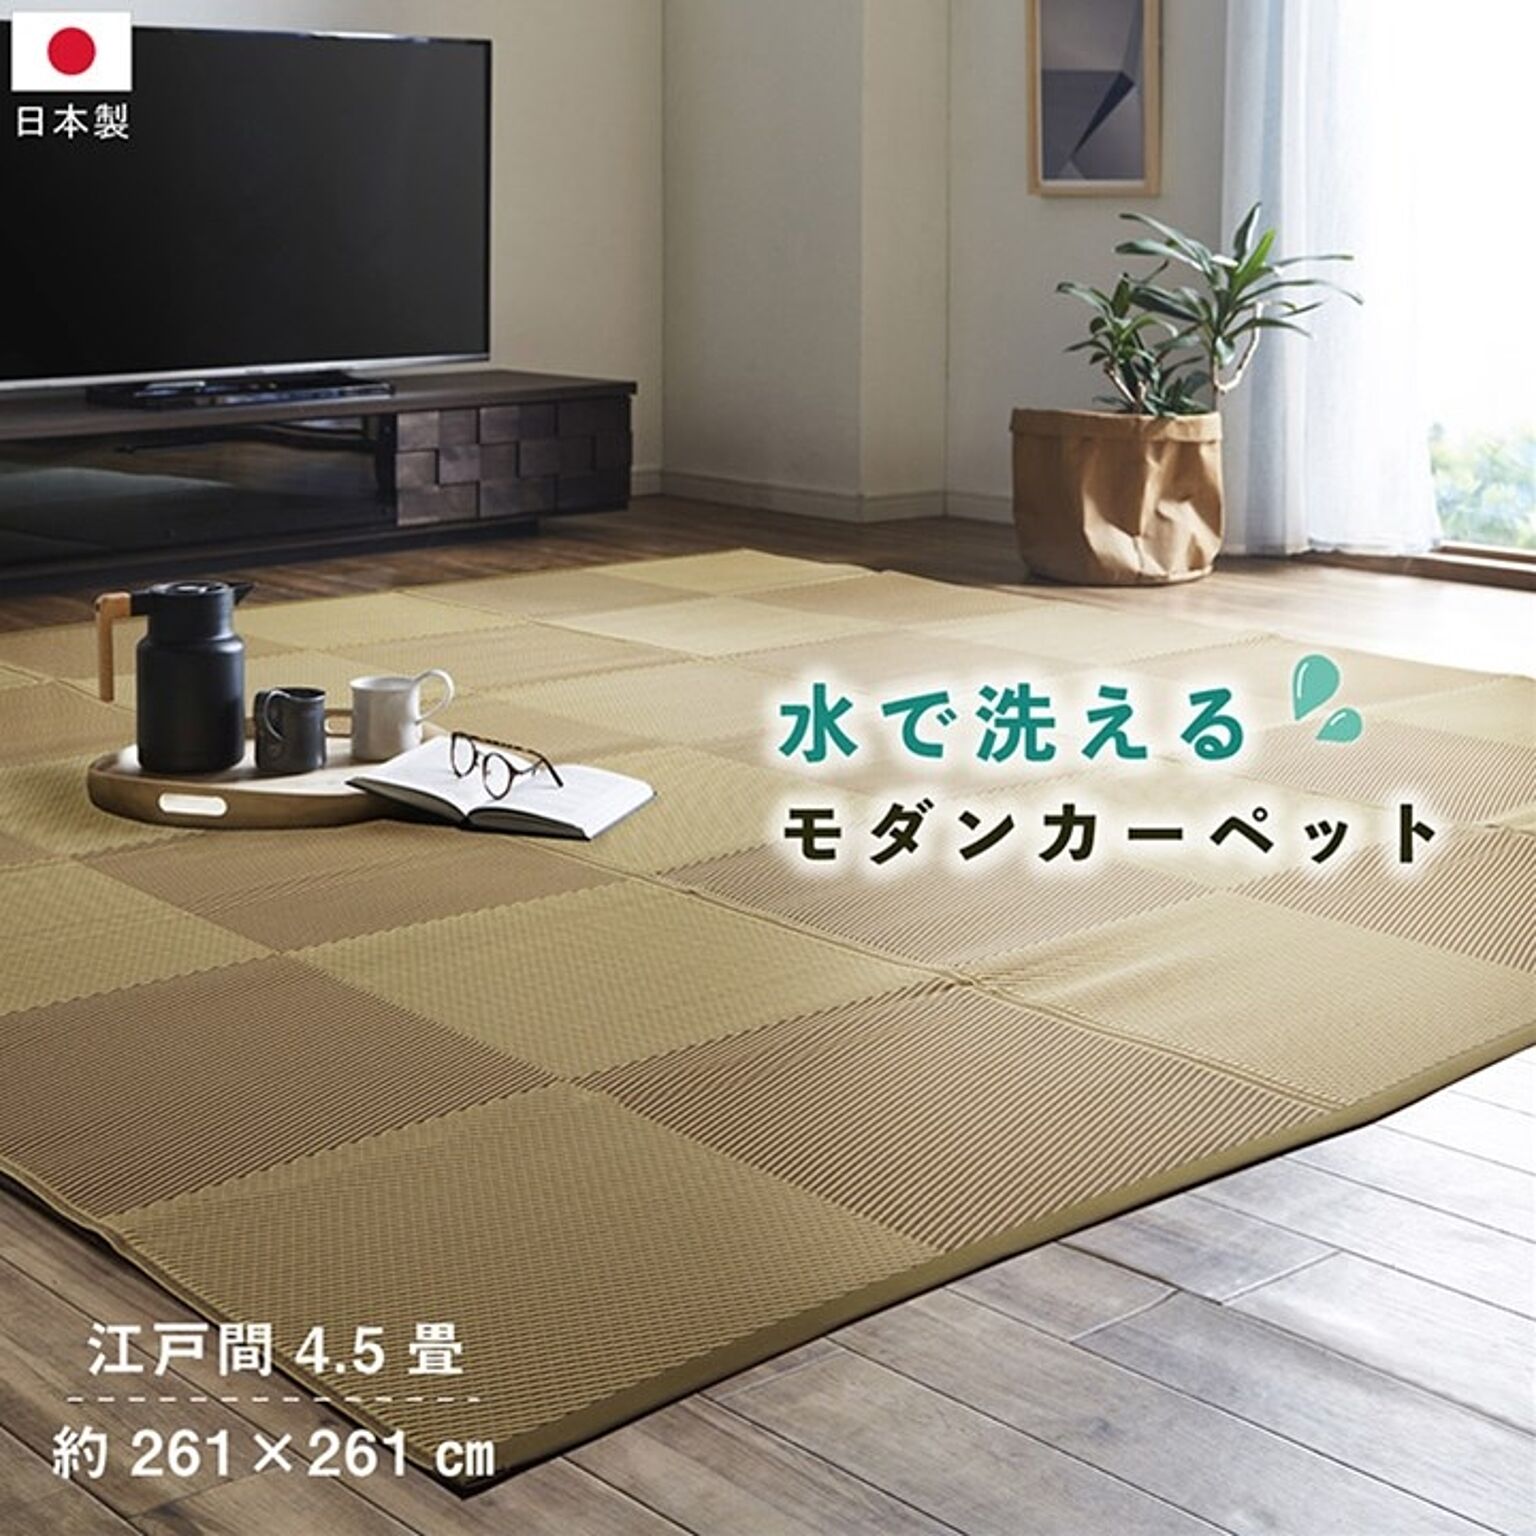 丈夫で洗える日本製カーペット 除菌スプレー対応 江戸間4.5畳 アウトドア・ペット対応 約261×261cm ベージュ